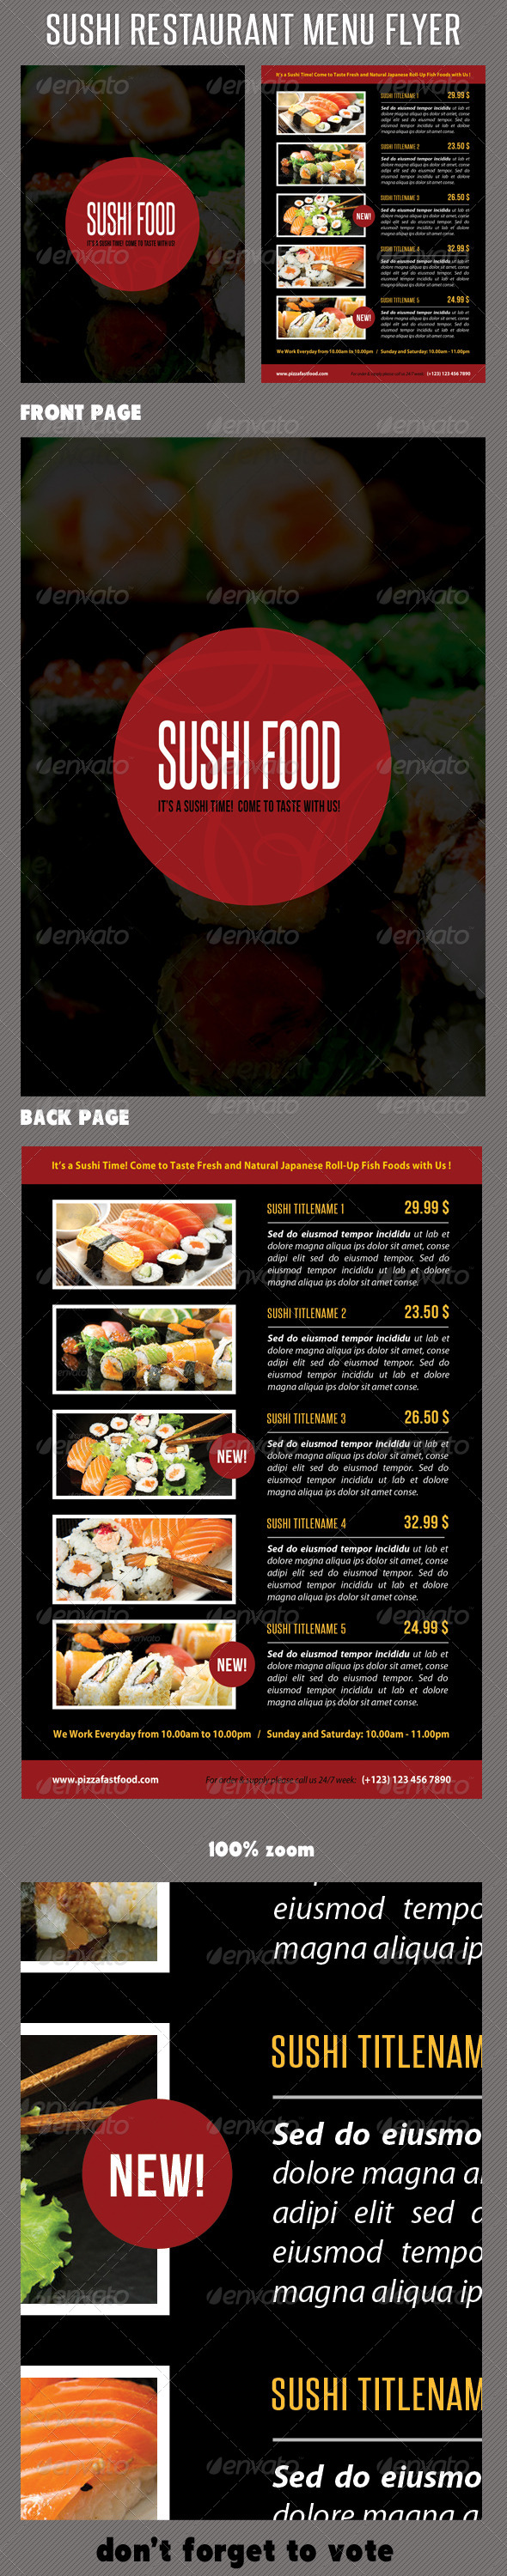 Sushi Restaurant Menu Flyer V02